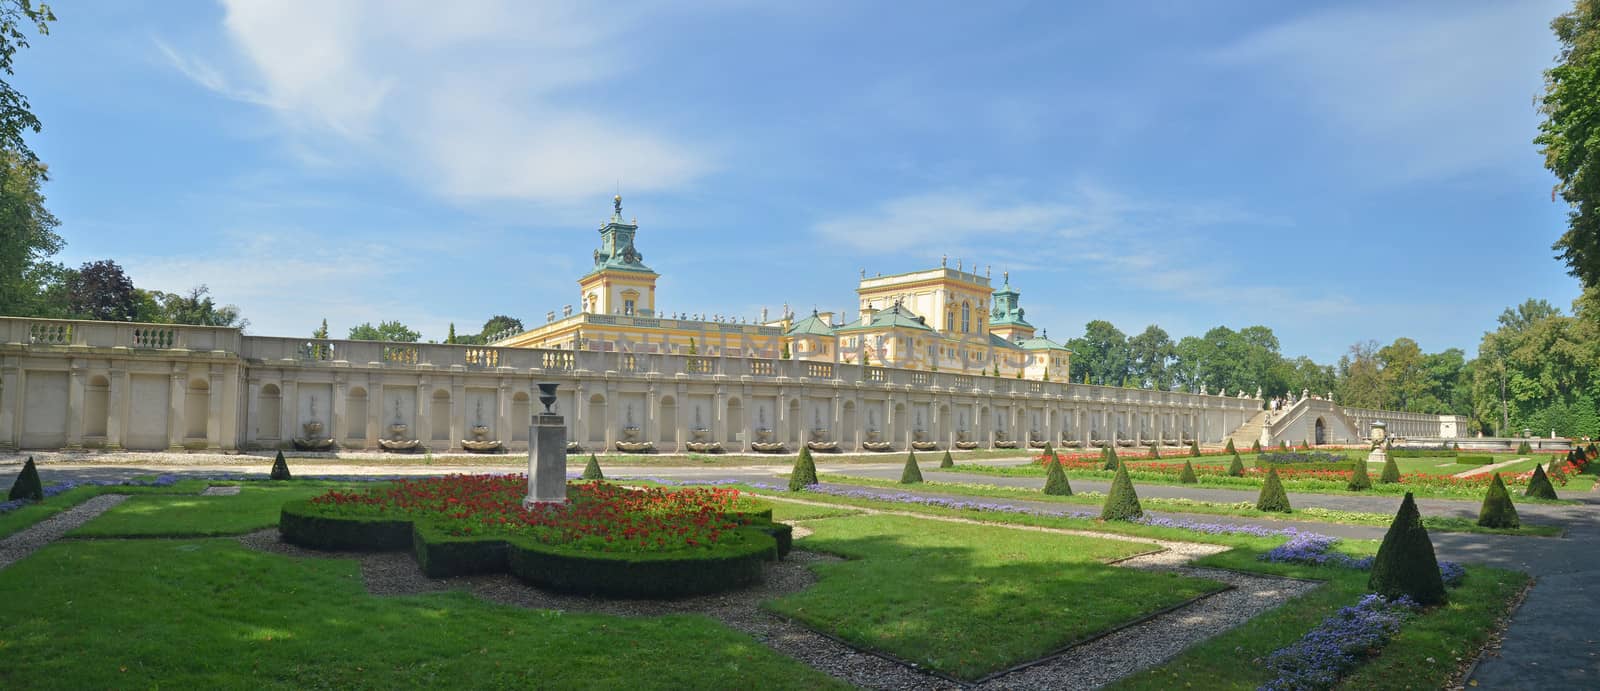 Royal Castle in Wilanow by Vectorex